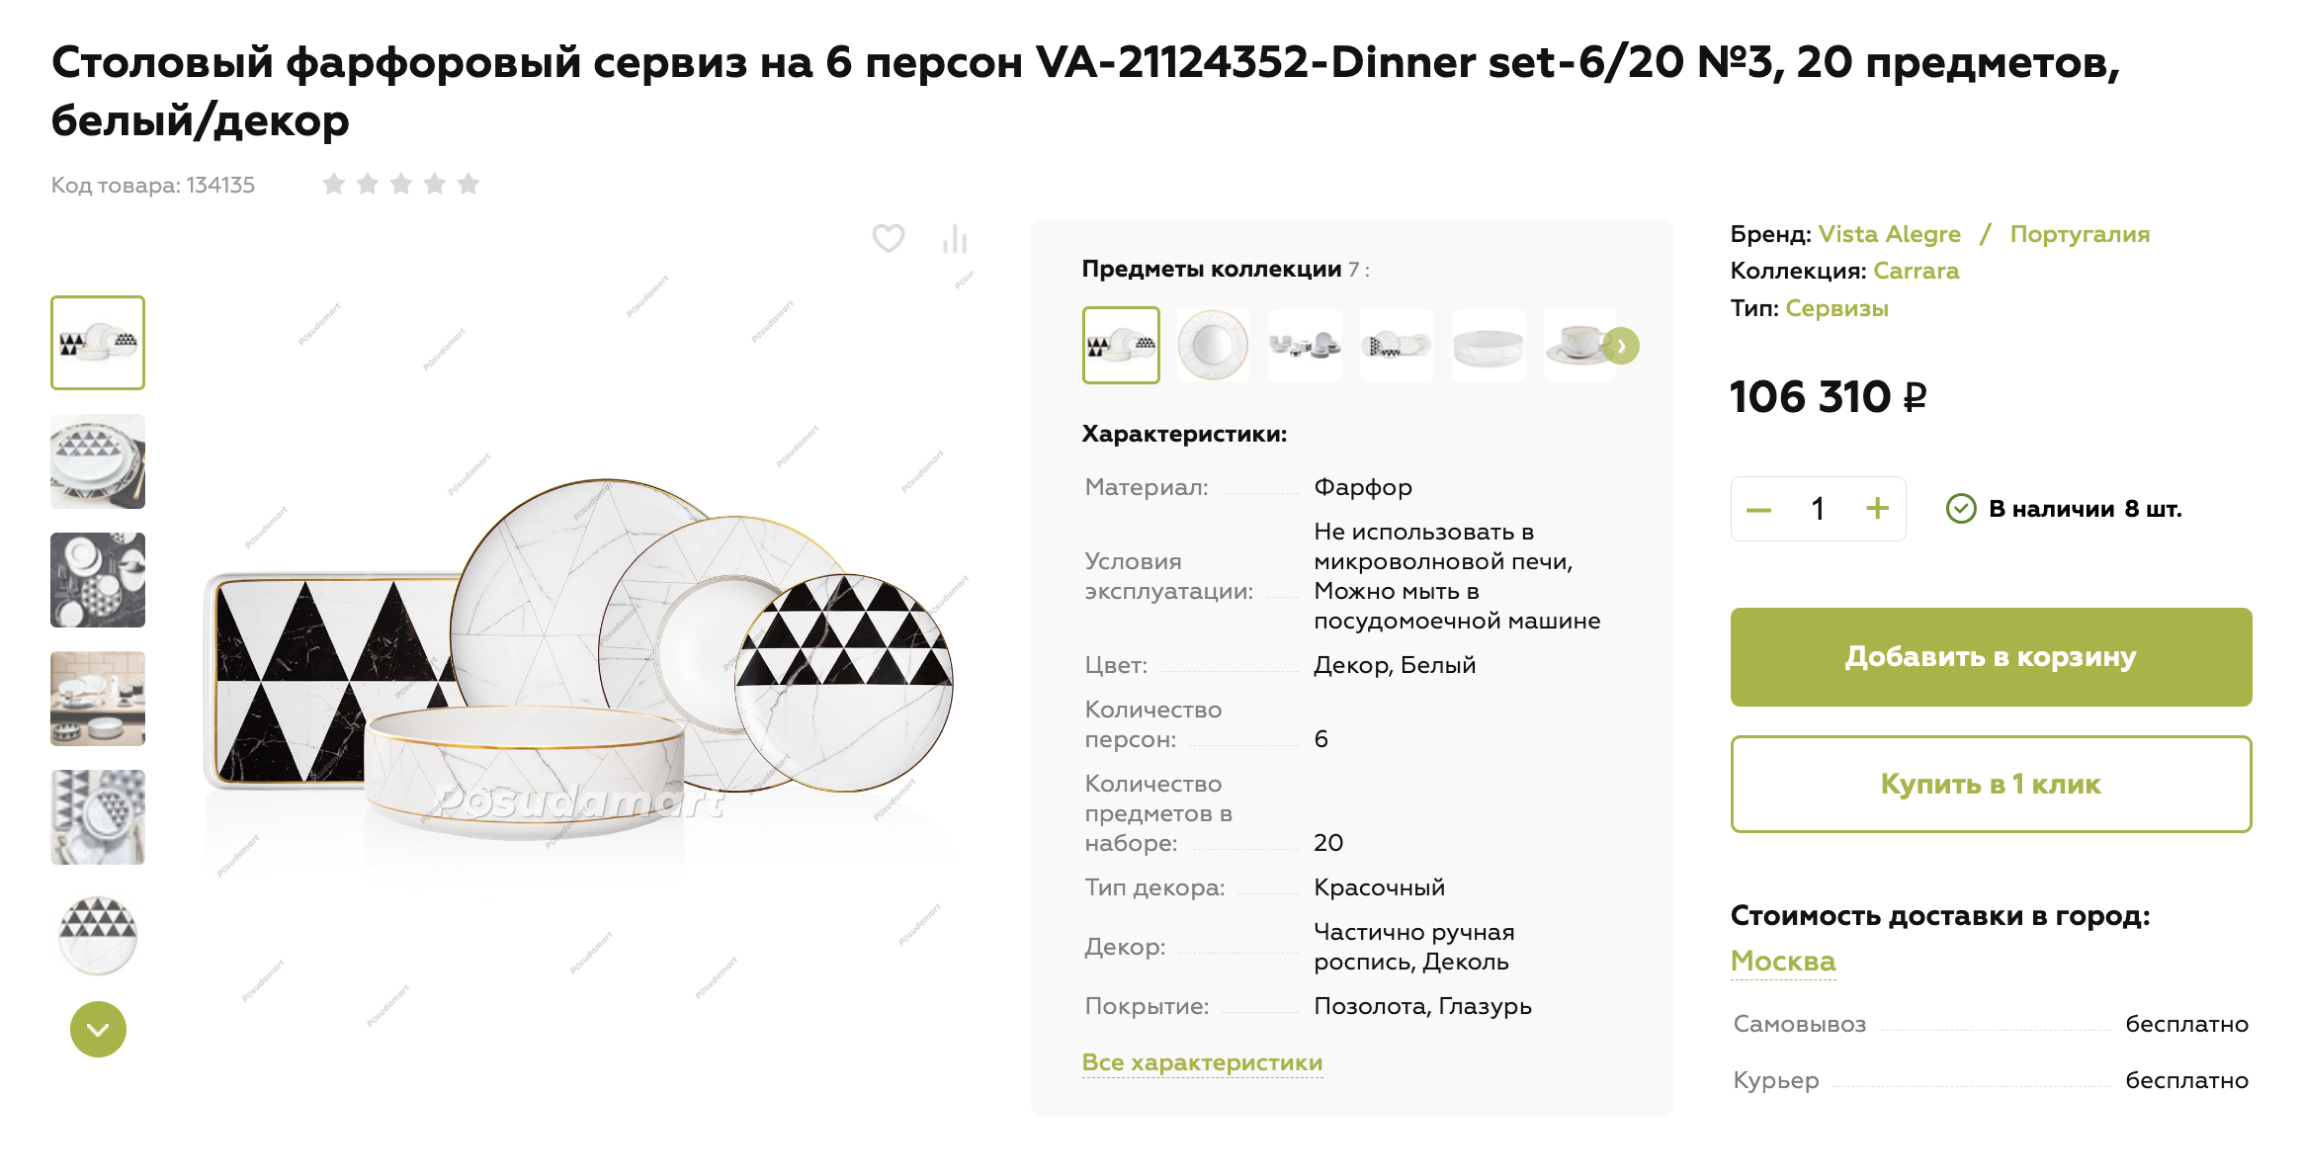 Такая премиум-посуда хорошо подойдет в современную кухню. Источник: posudamart.ru